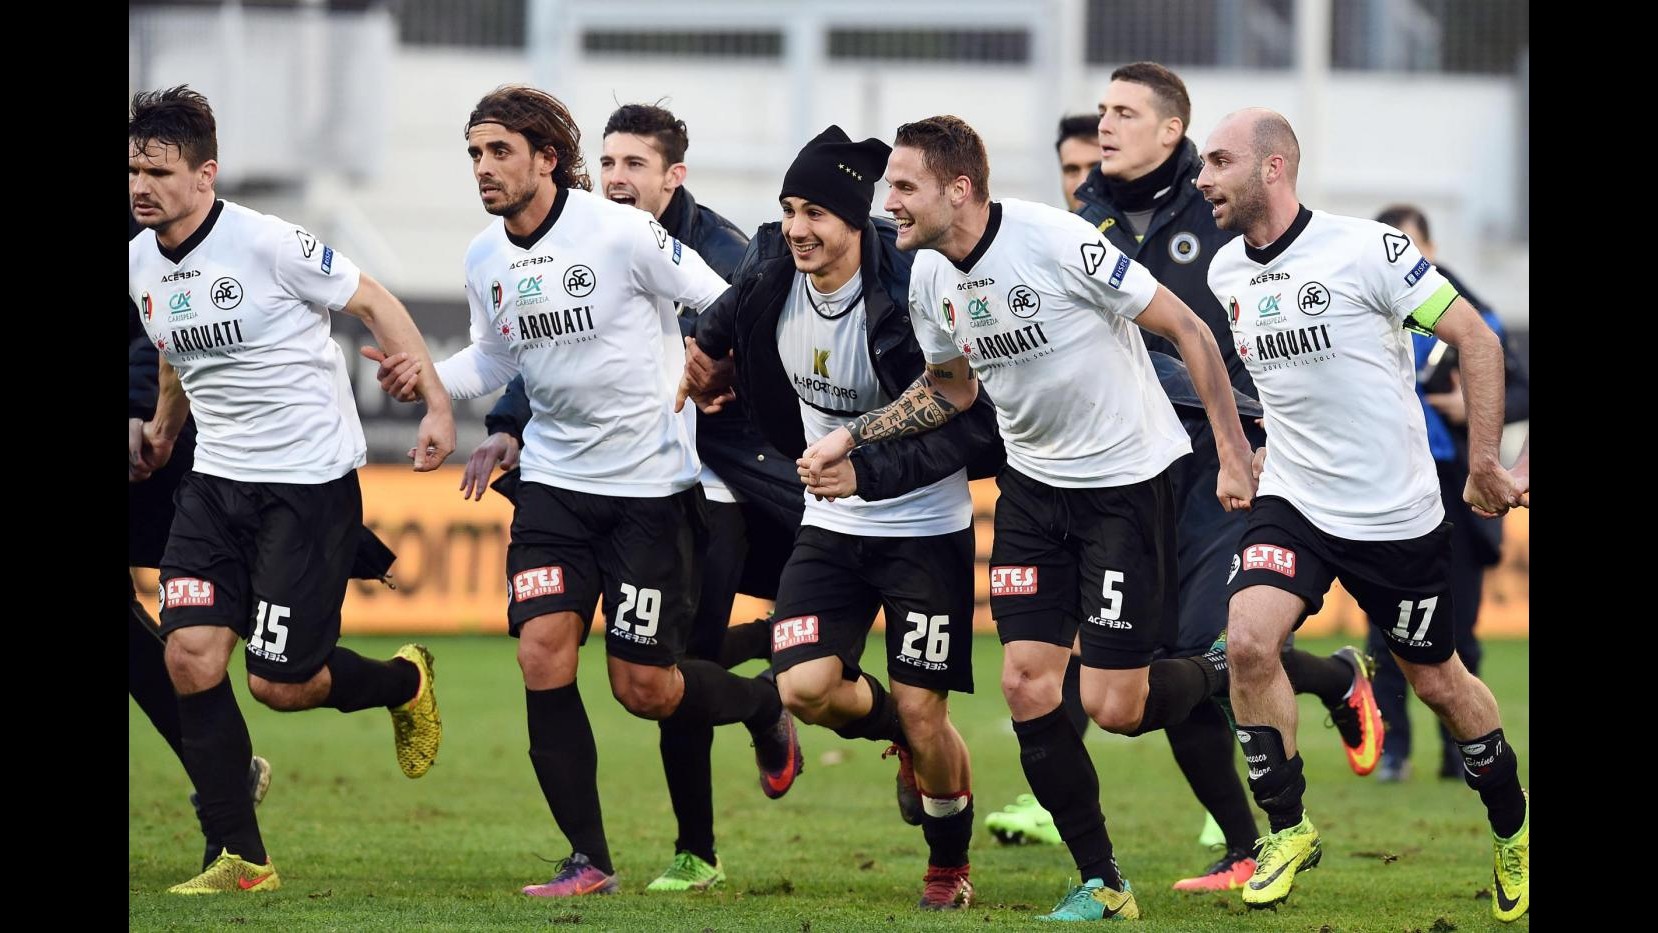 FOTO Serie B, Spezia vince contro Ternana 2-0